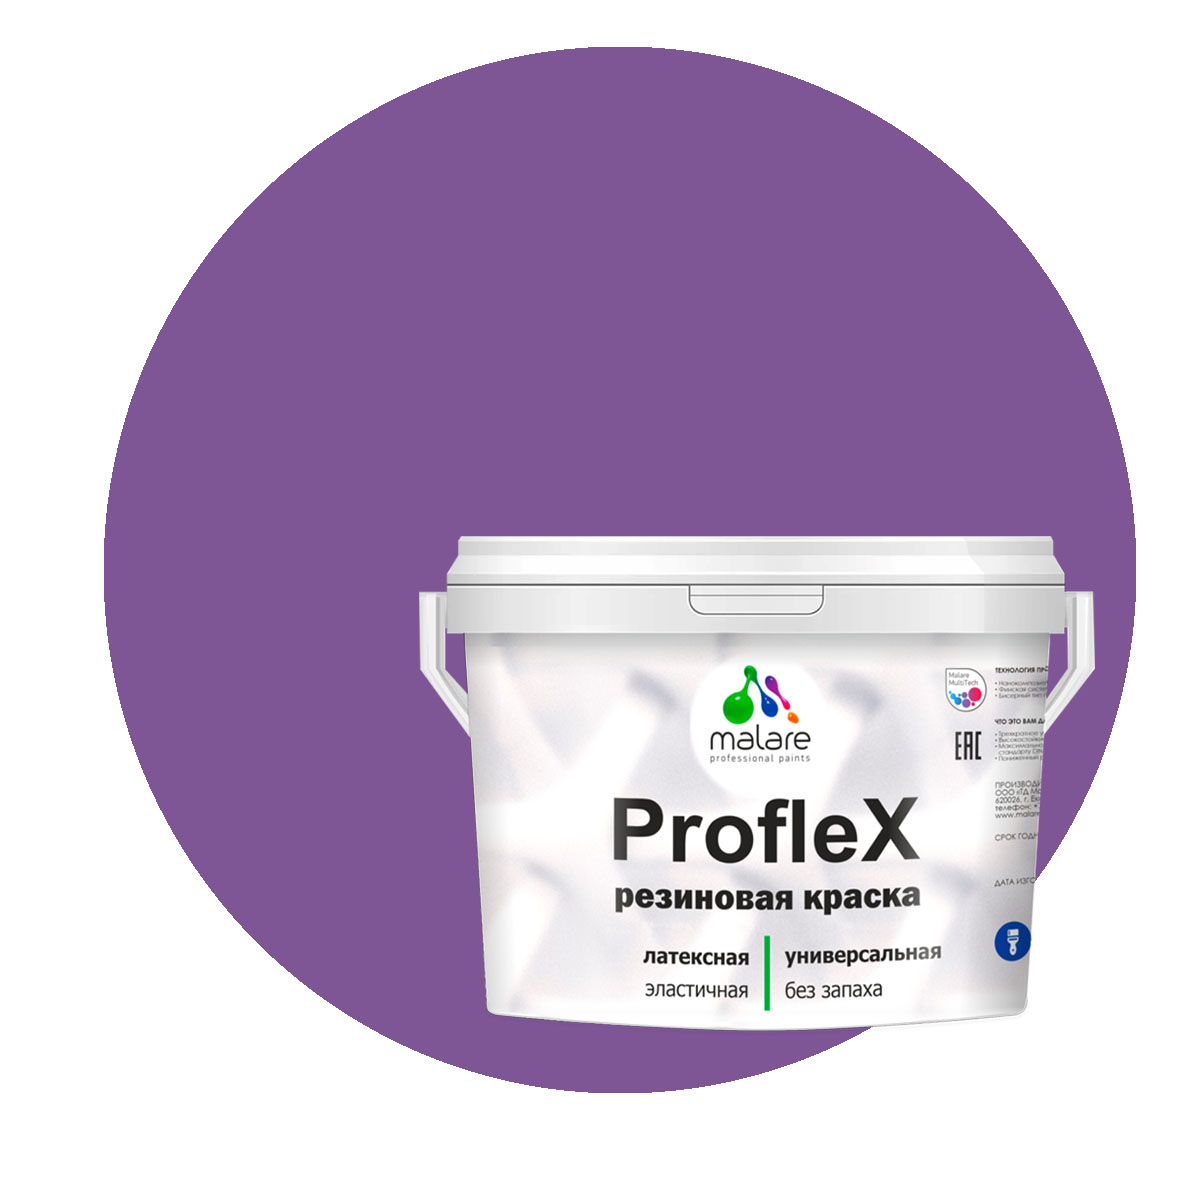 Краска Malare ProfleX для фасадов, интерьера, мебели, георгин, 1 кг. щелочной очиститель фасадов зданий plex